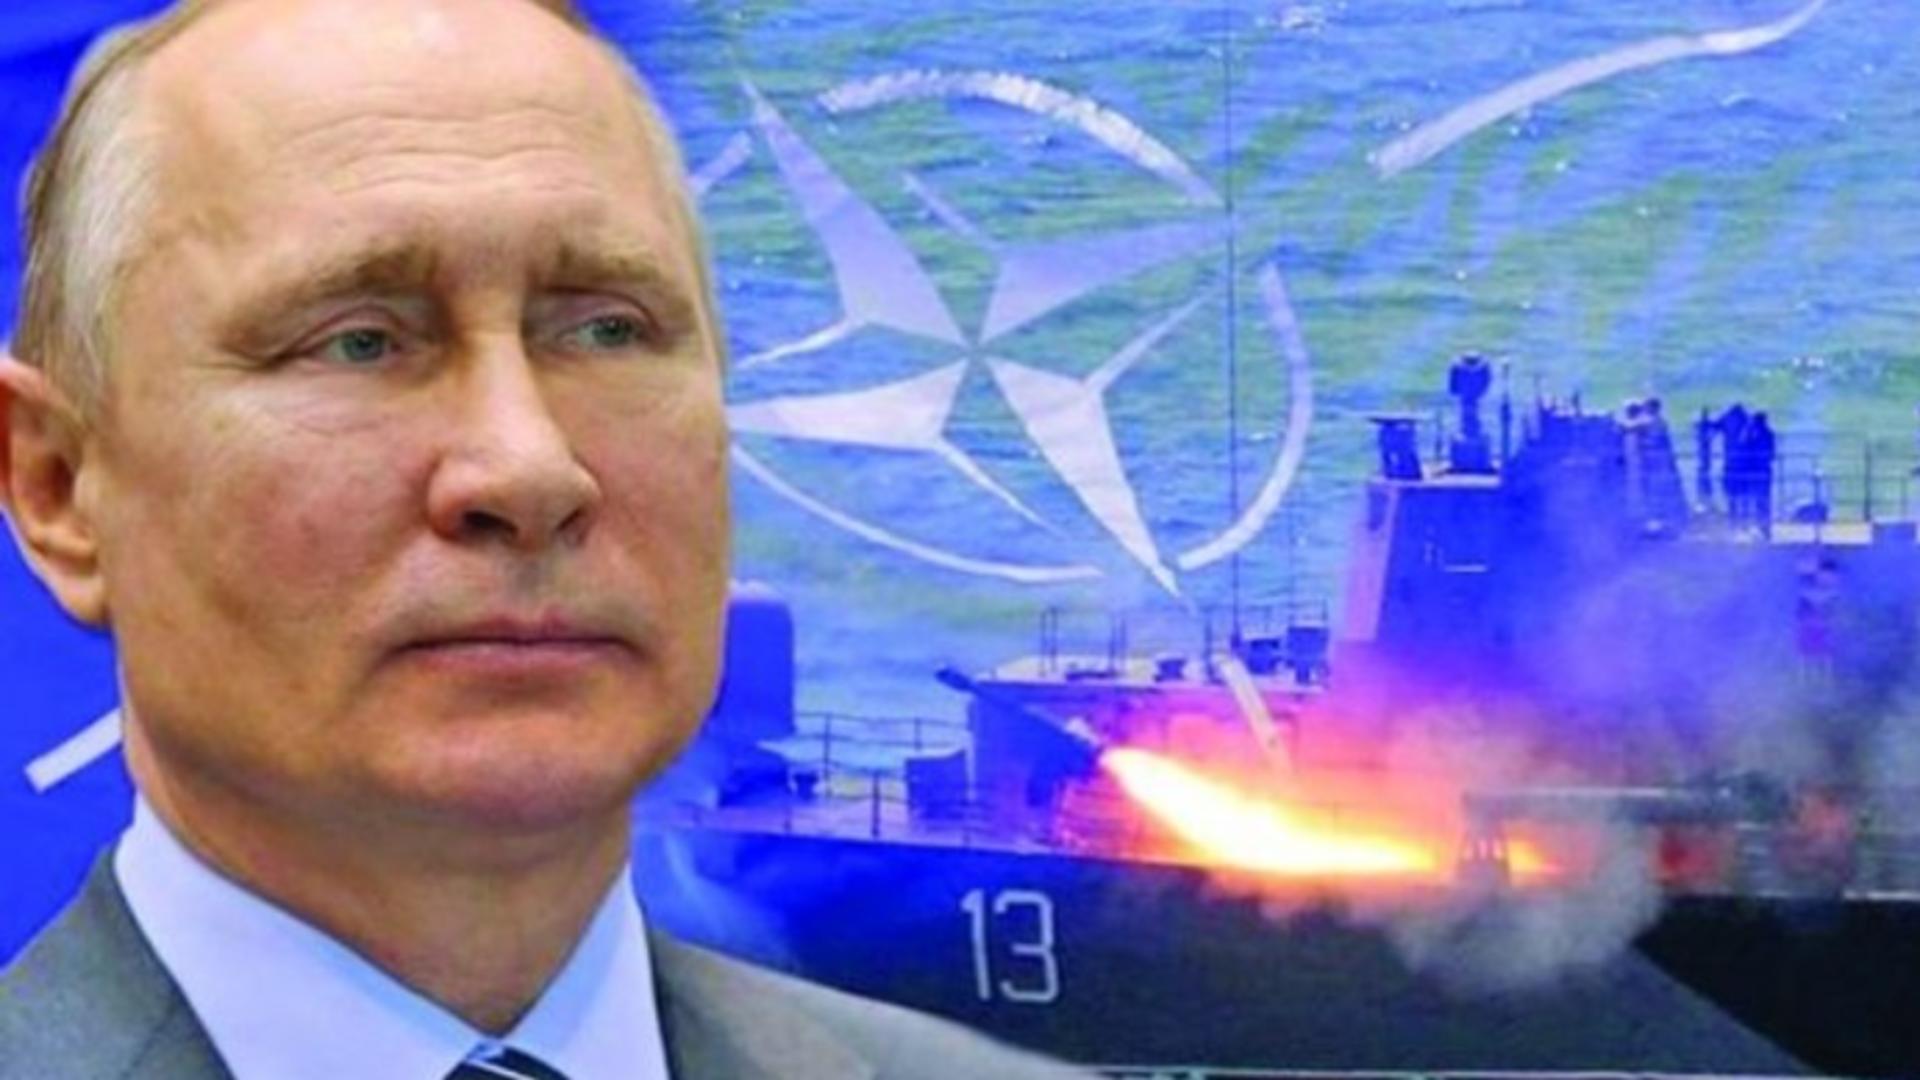 Declarații halucinante la televiziunile rusești, după amenințările lui Putin: "Trebuie să demilitarizăm NATO"